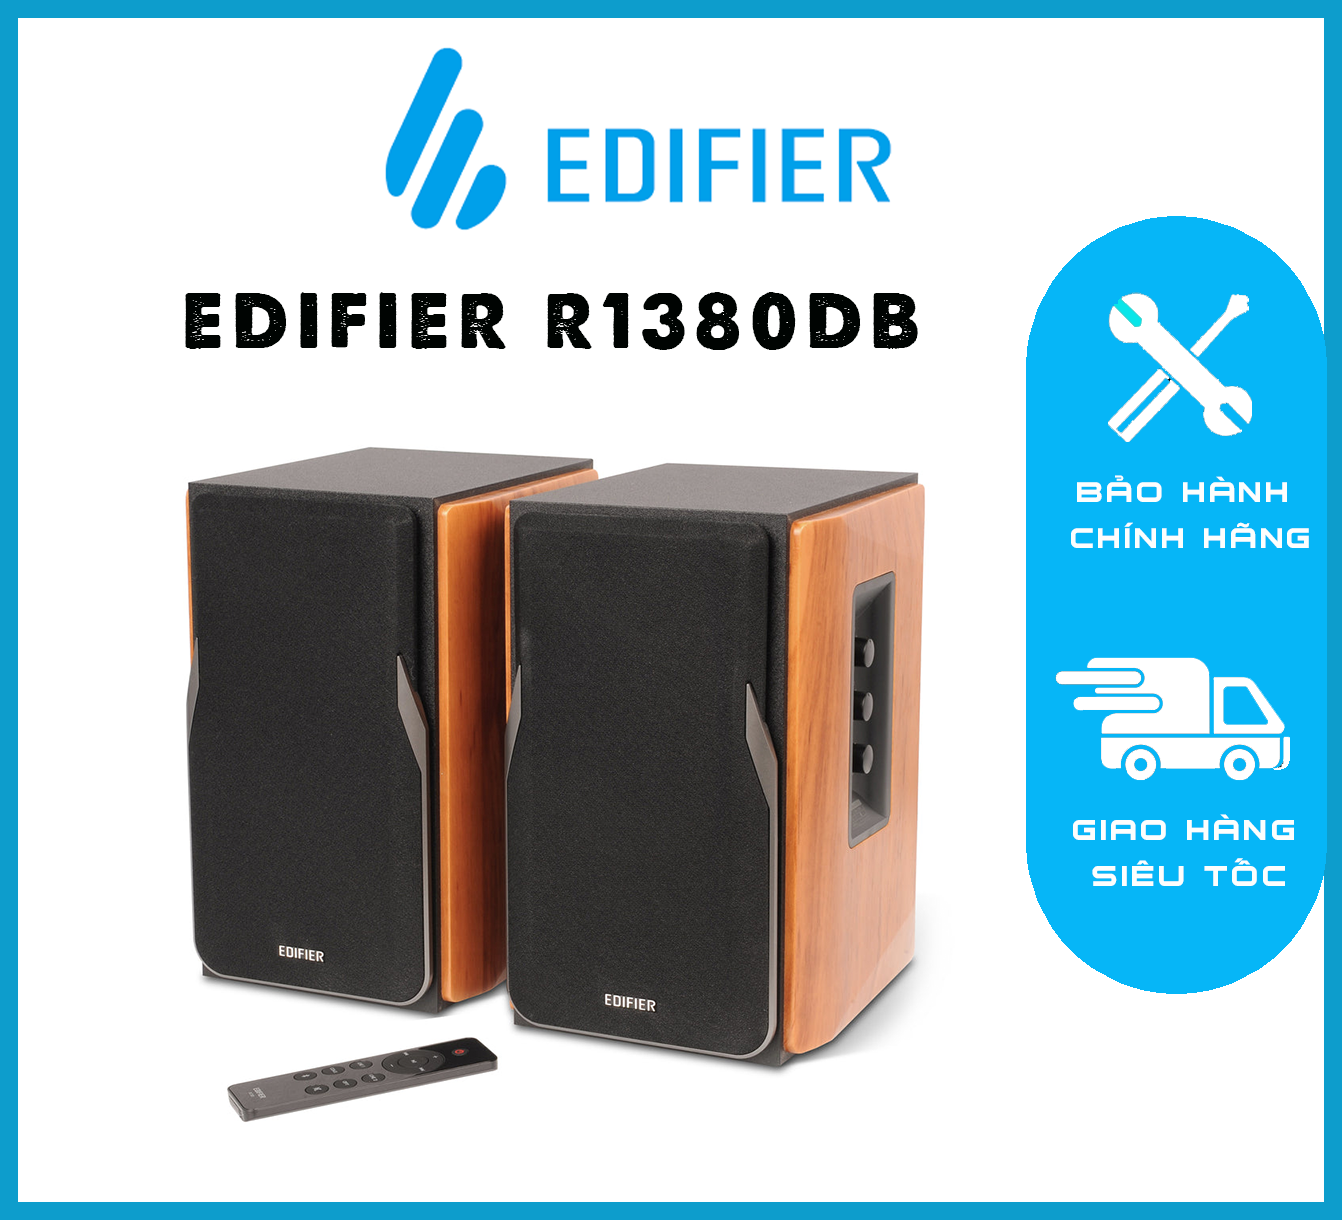 EDIFIER R1380DB